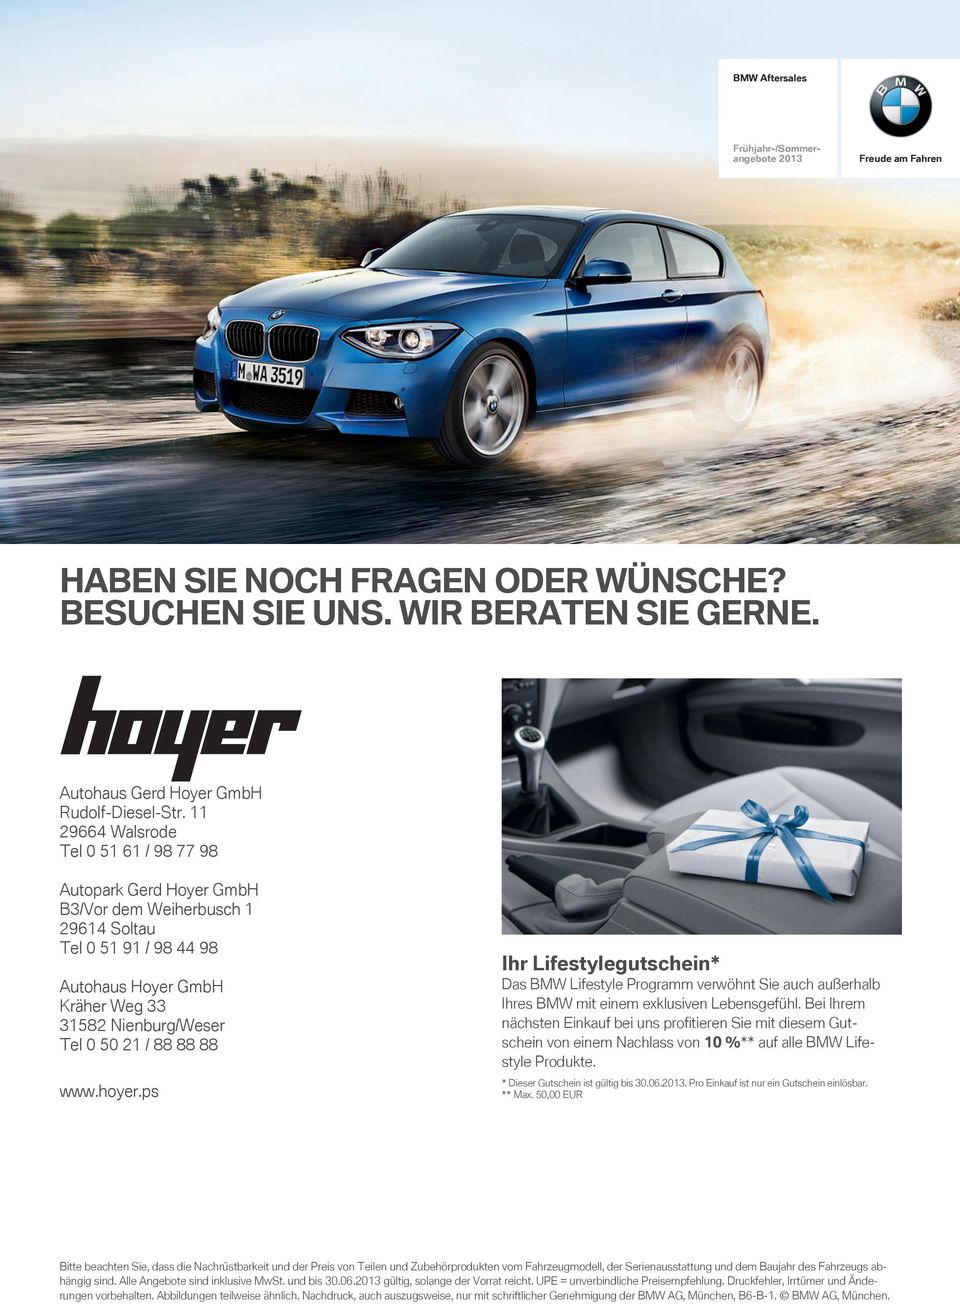 www.hoyer.ps Ihr Lifestylegutschein* Das BMW Lifestyle Programm verwöhnt Sie auch außerhalb Ihres BMW mit einem exklusiven Lebensgefühl.